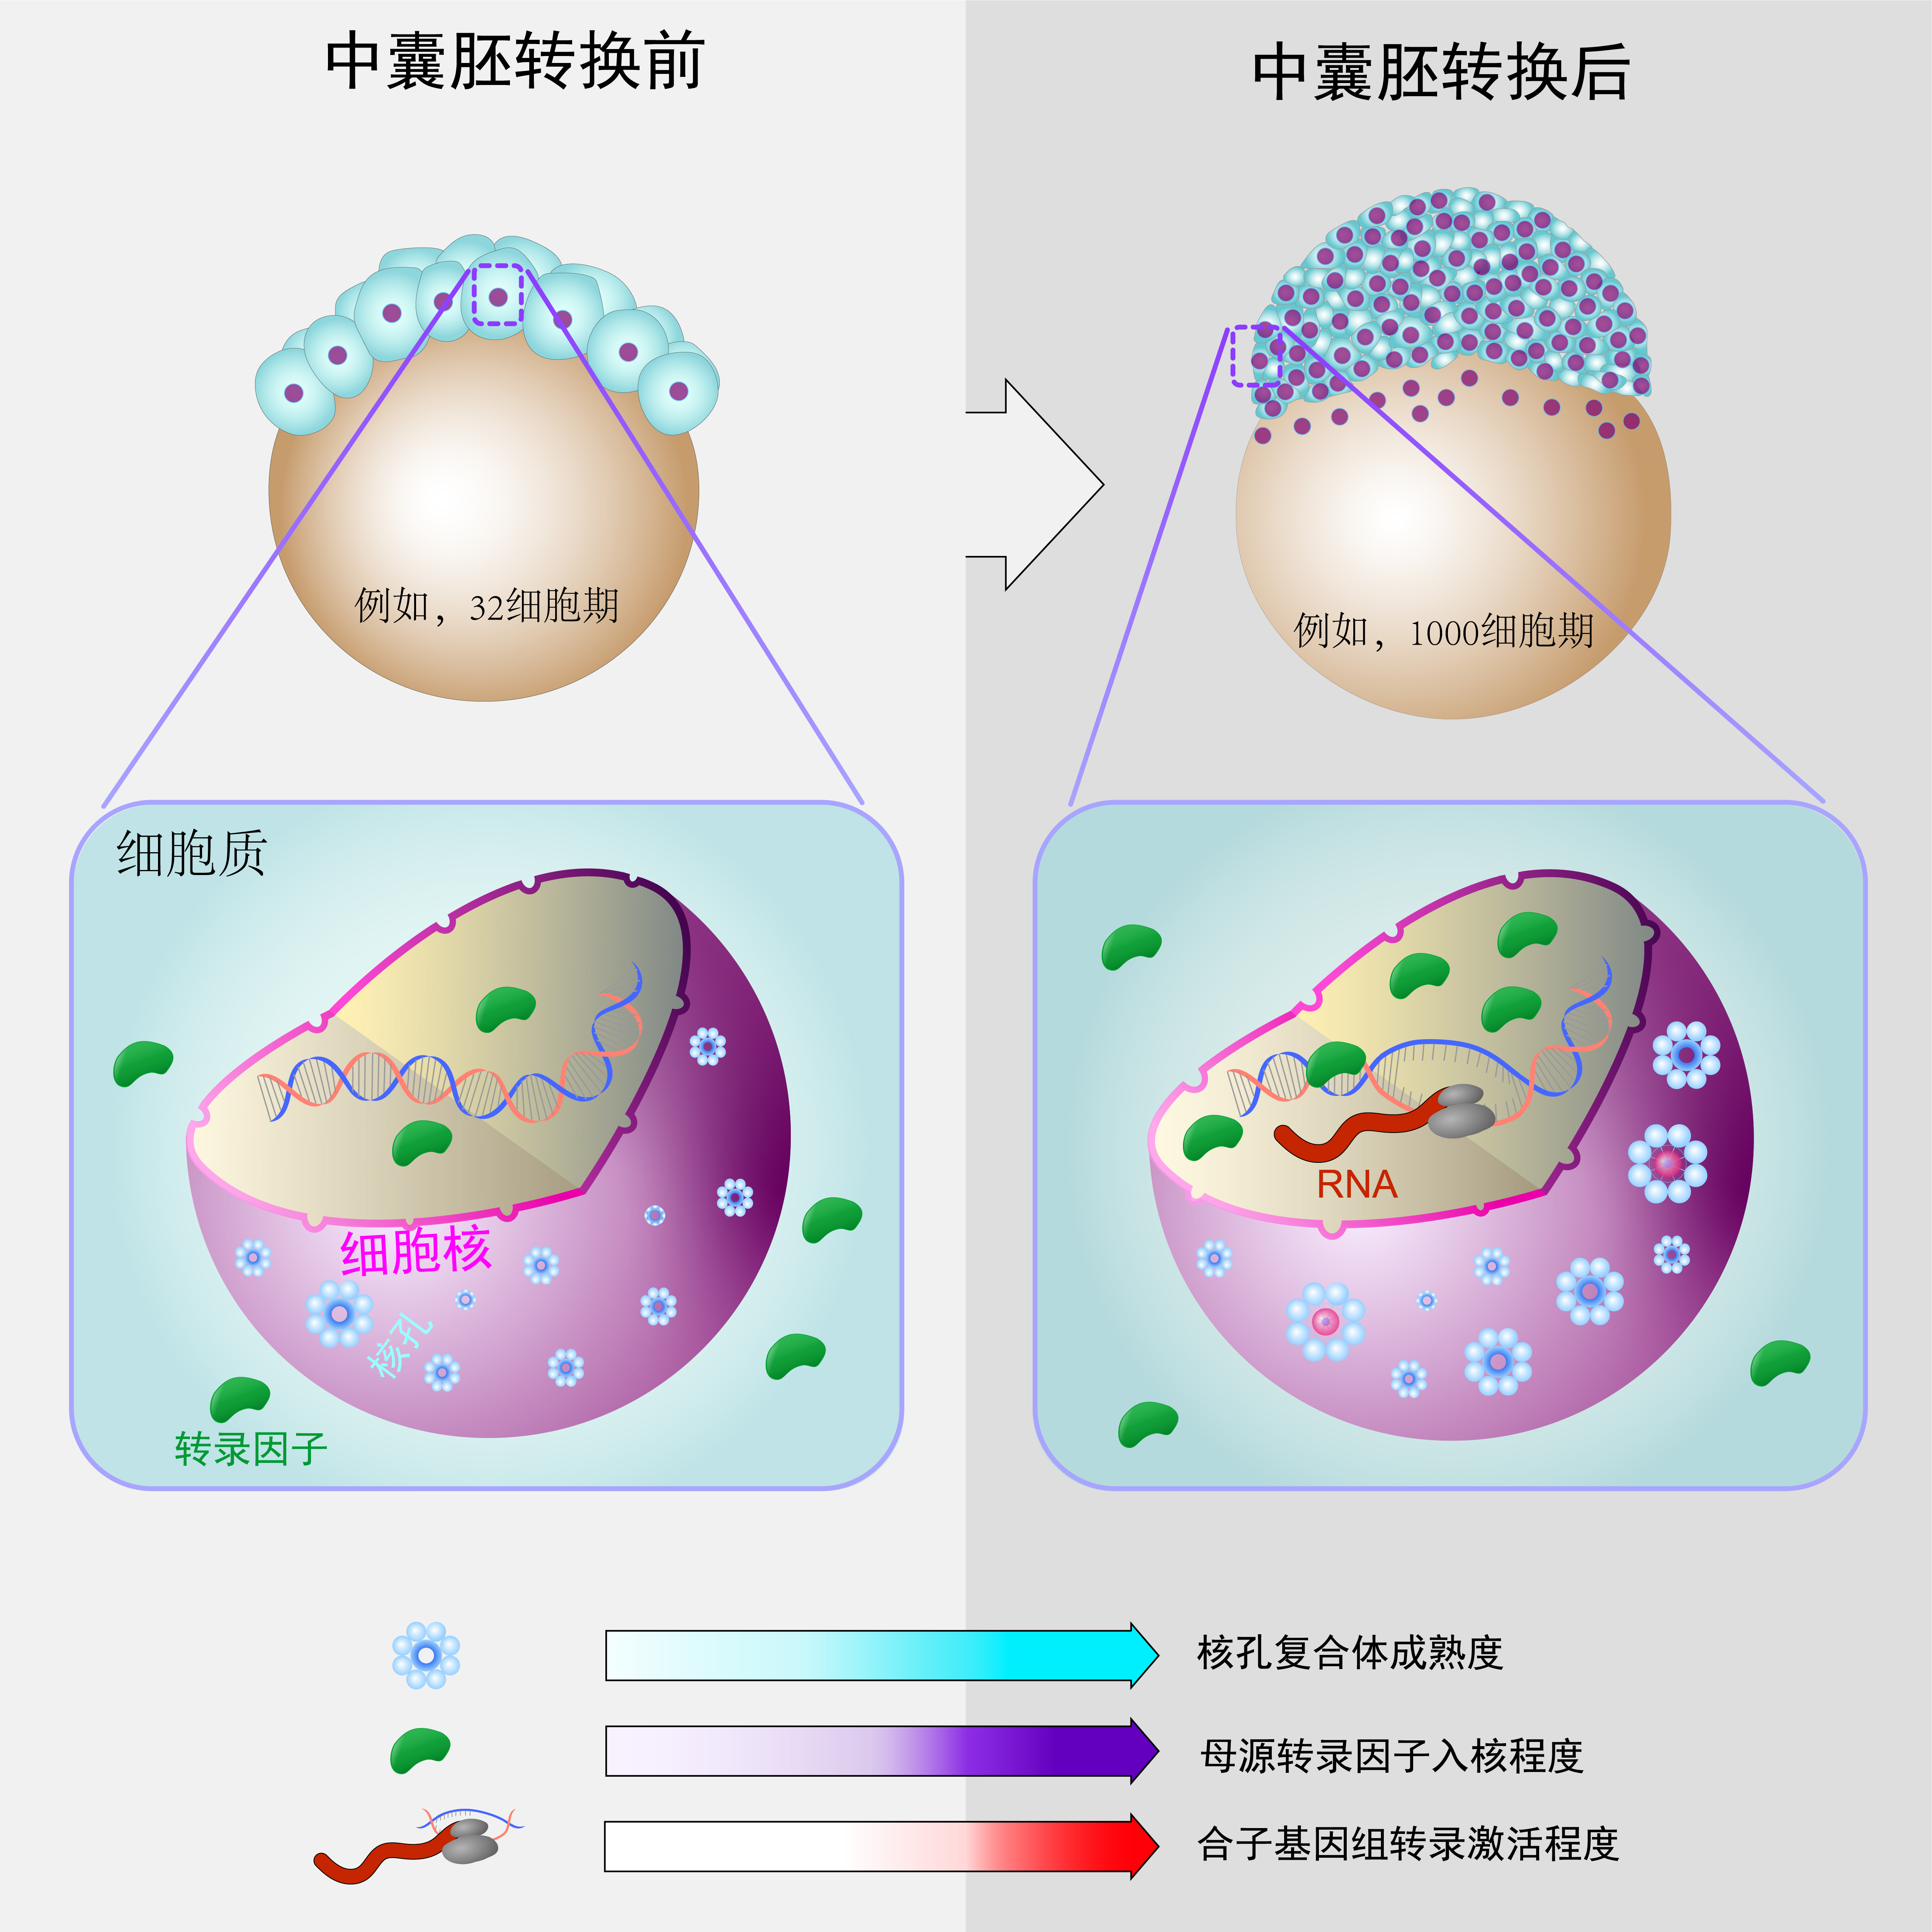 核孔复合体成熟度调控合子基因组转录激活的模式图